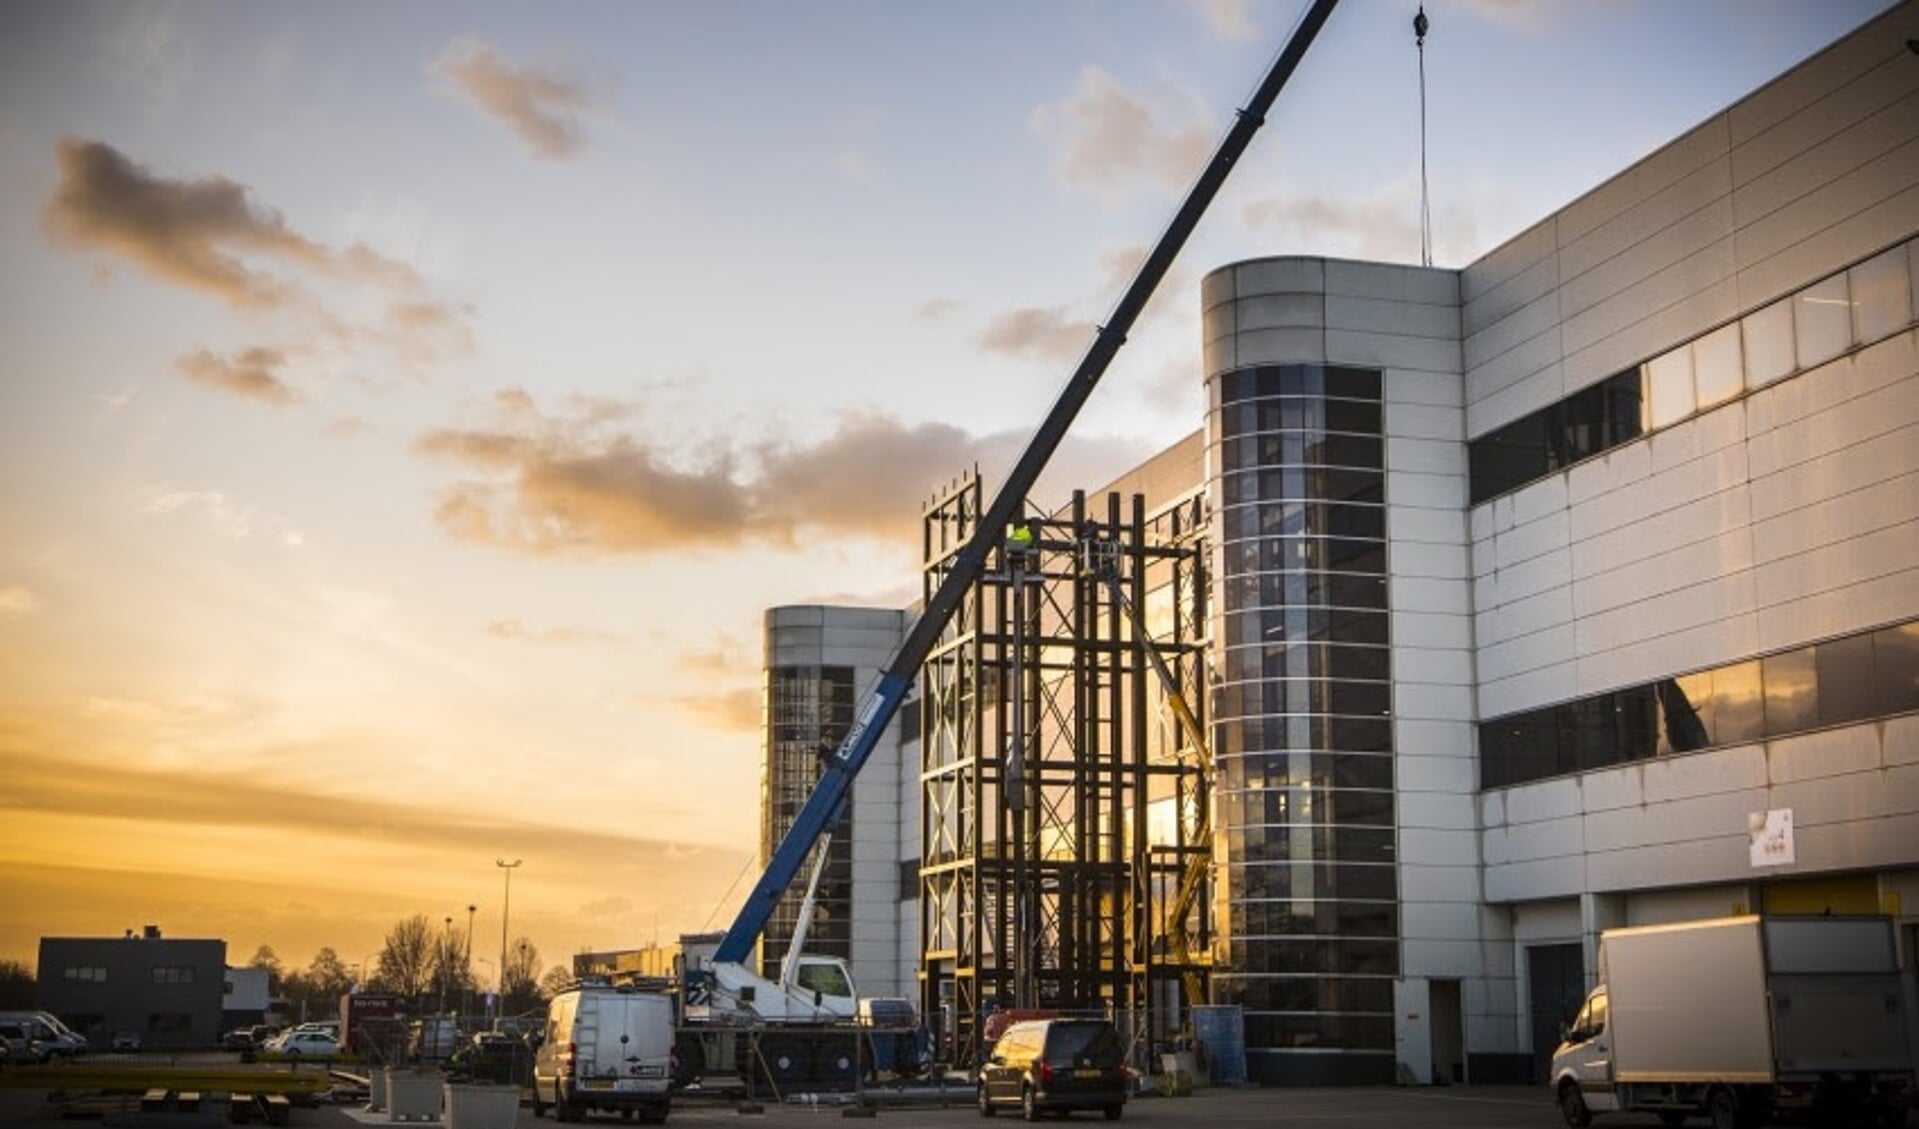 Eigenaar Easyfairs is begonnen met de bouw van twee megagoederenliften bij Evenementenhal Gorinchem. De oplevering is begin mei 2020. 